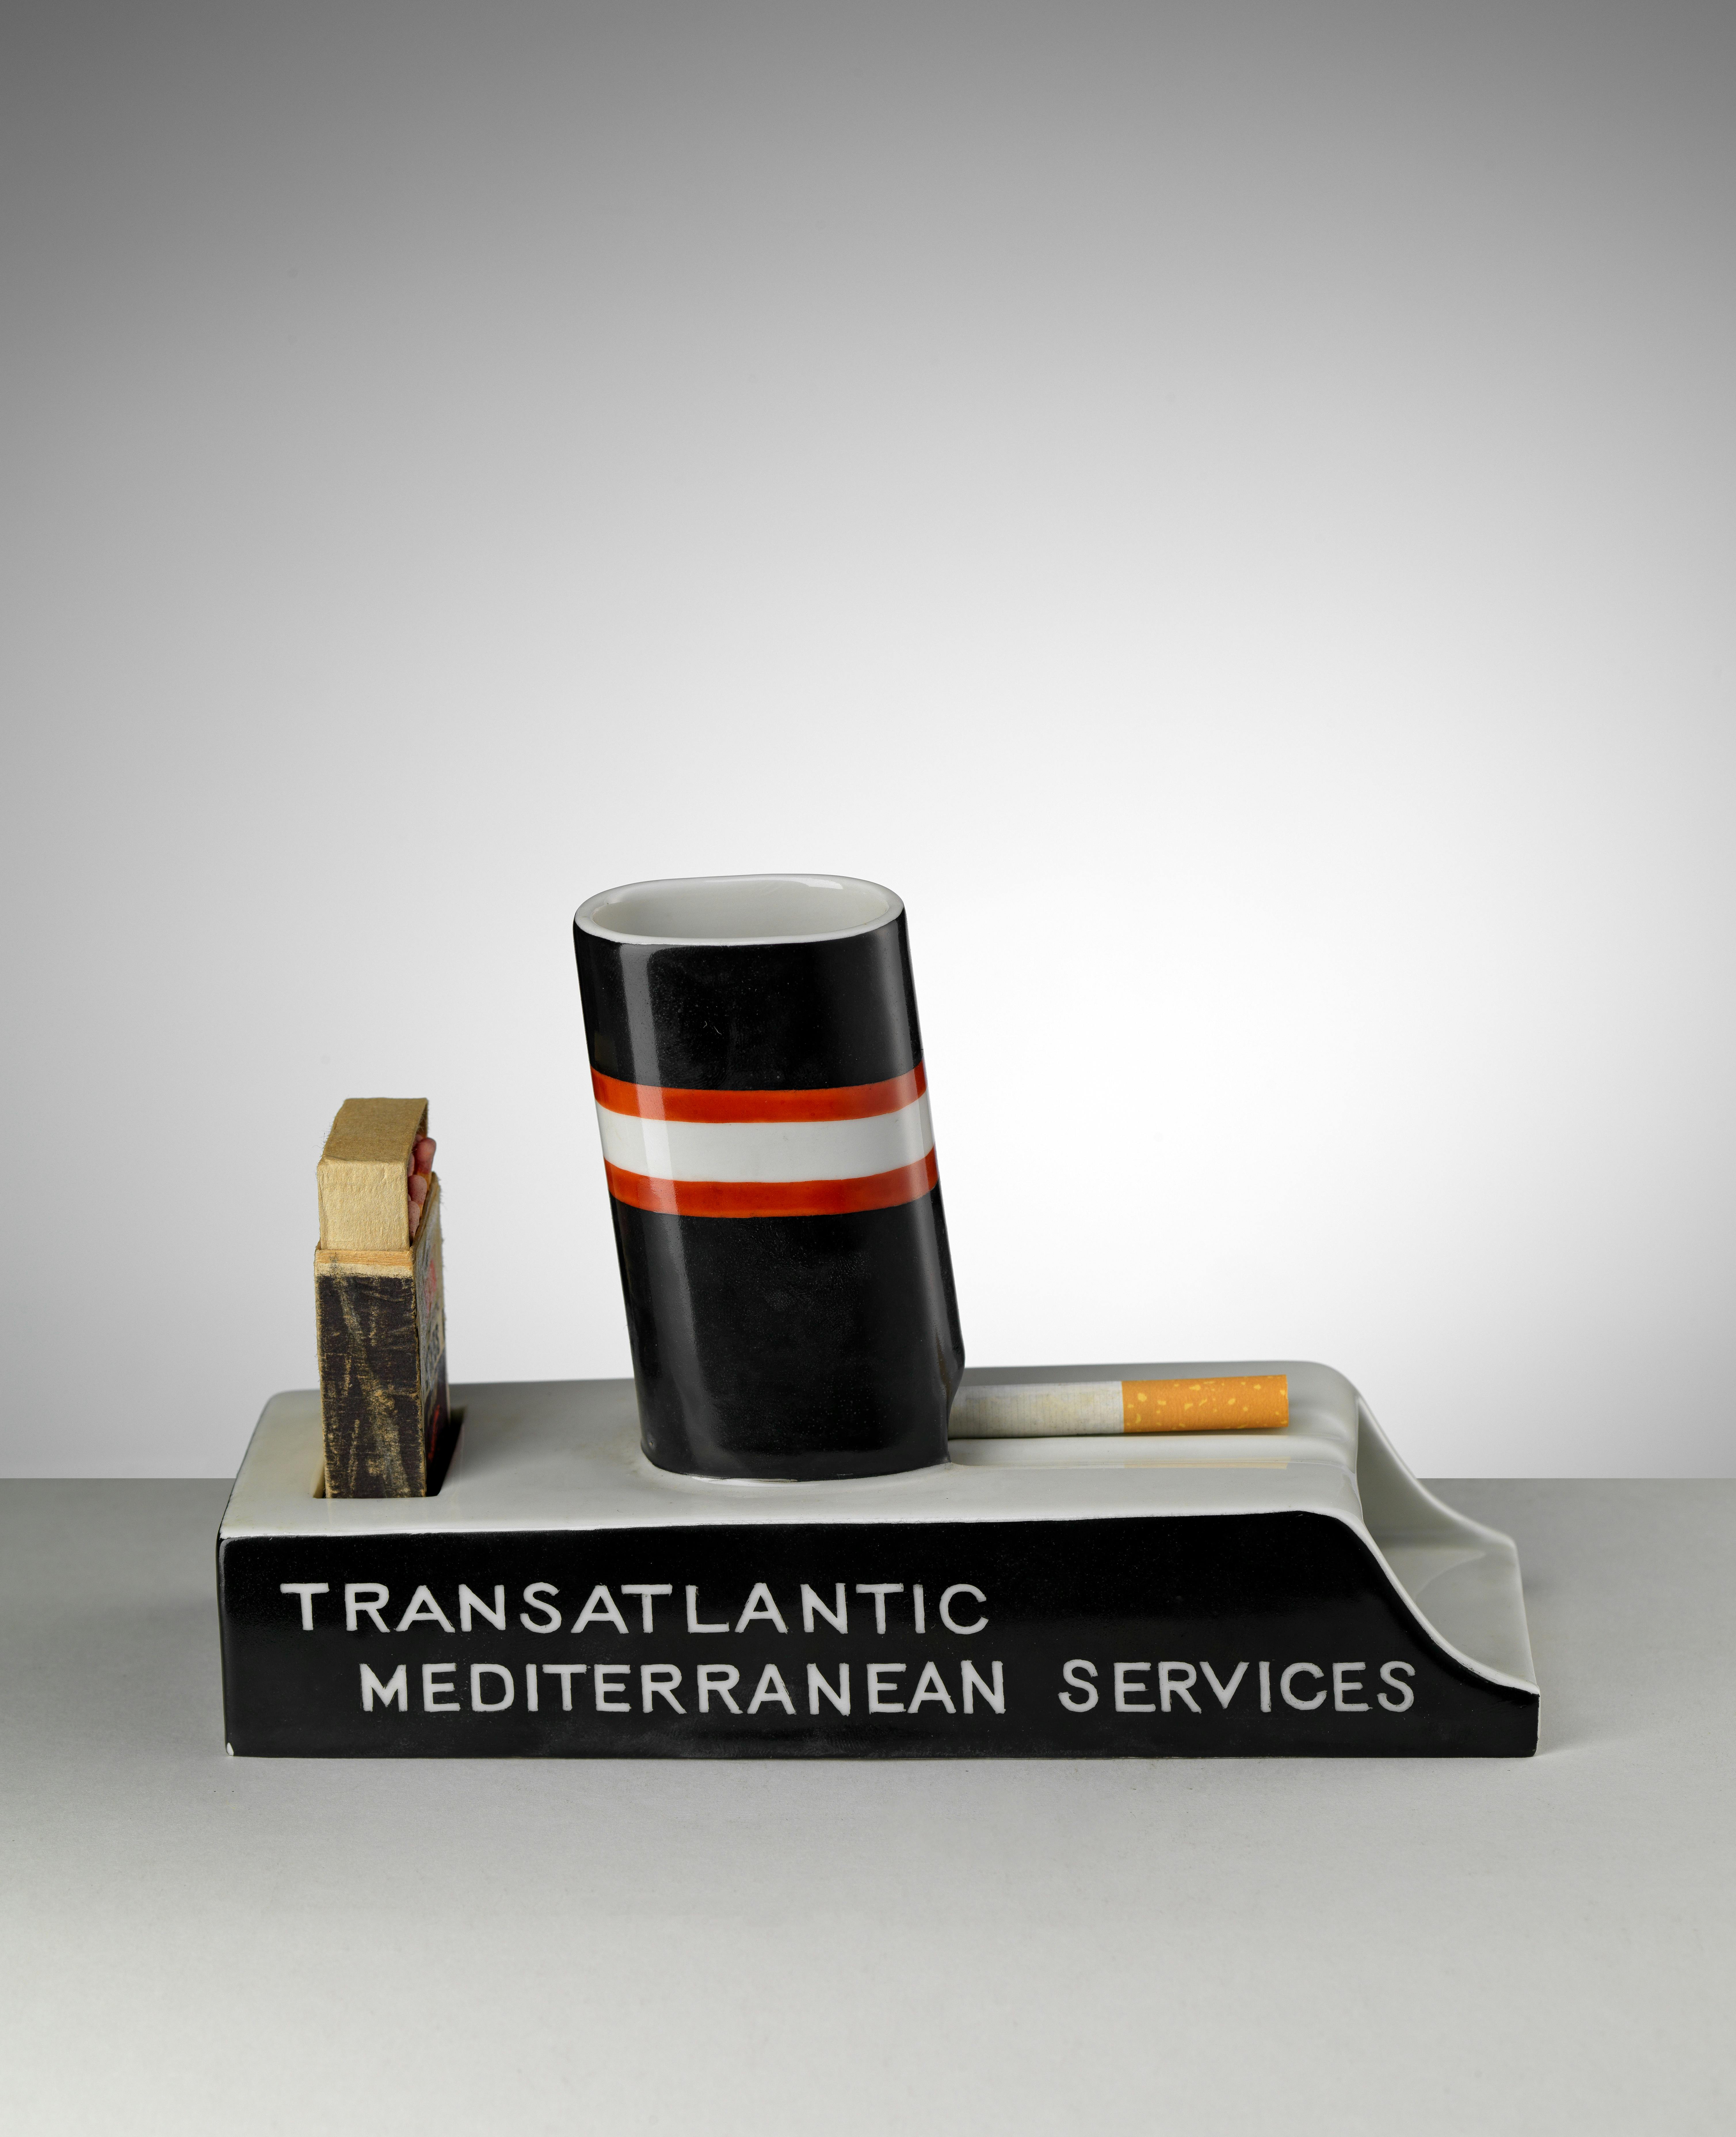 Posacenere pubblicitario a forma di nave in ceramica bianca, nera e rossa con scritta Transatlantic Mediterranean Service